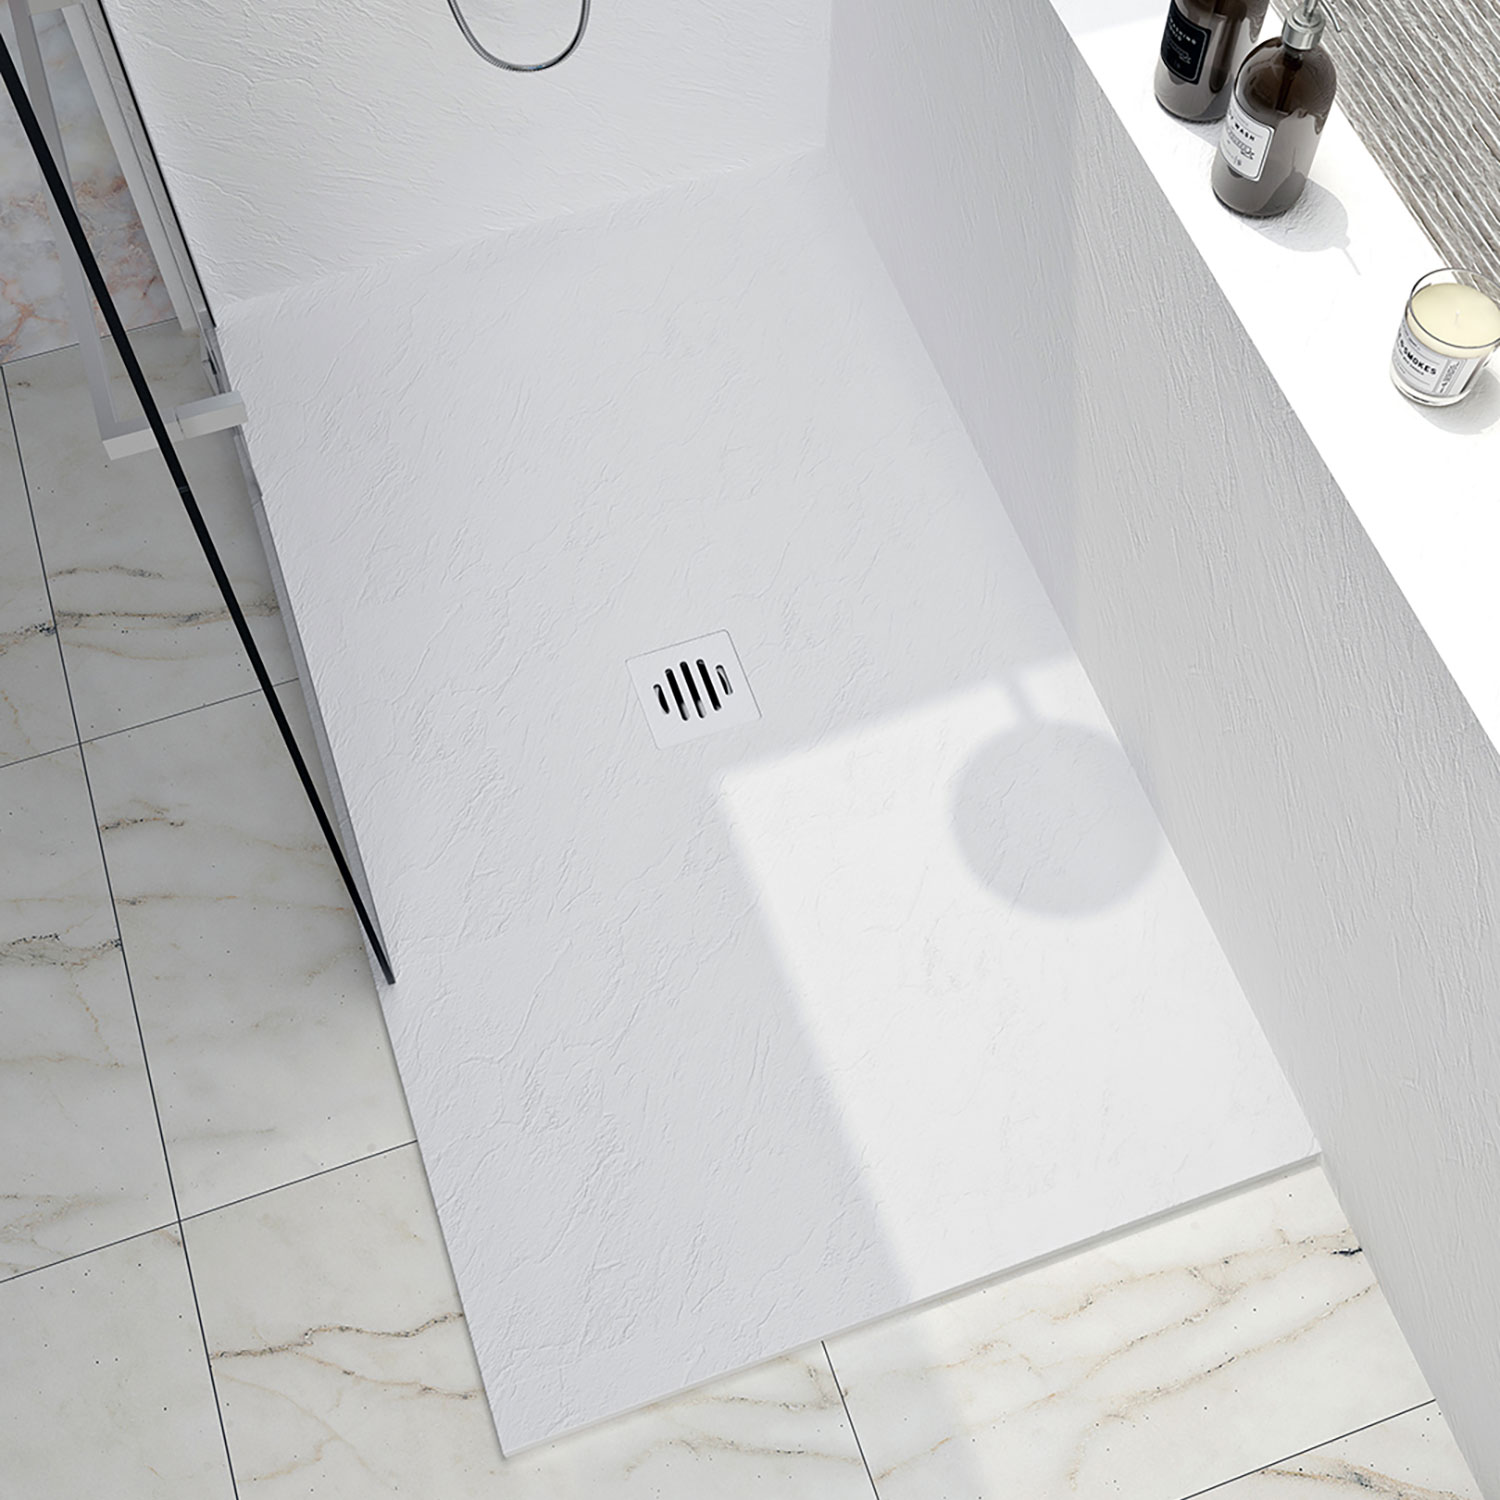 Shower base Slate 48 x 36, custom-made tile flange installation, in white